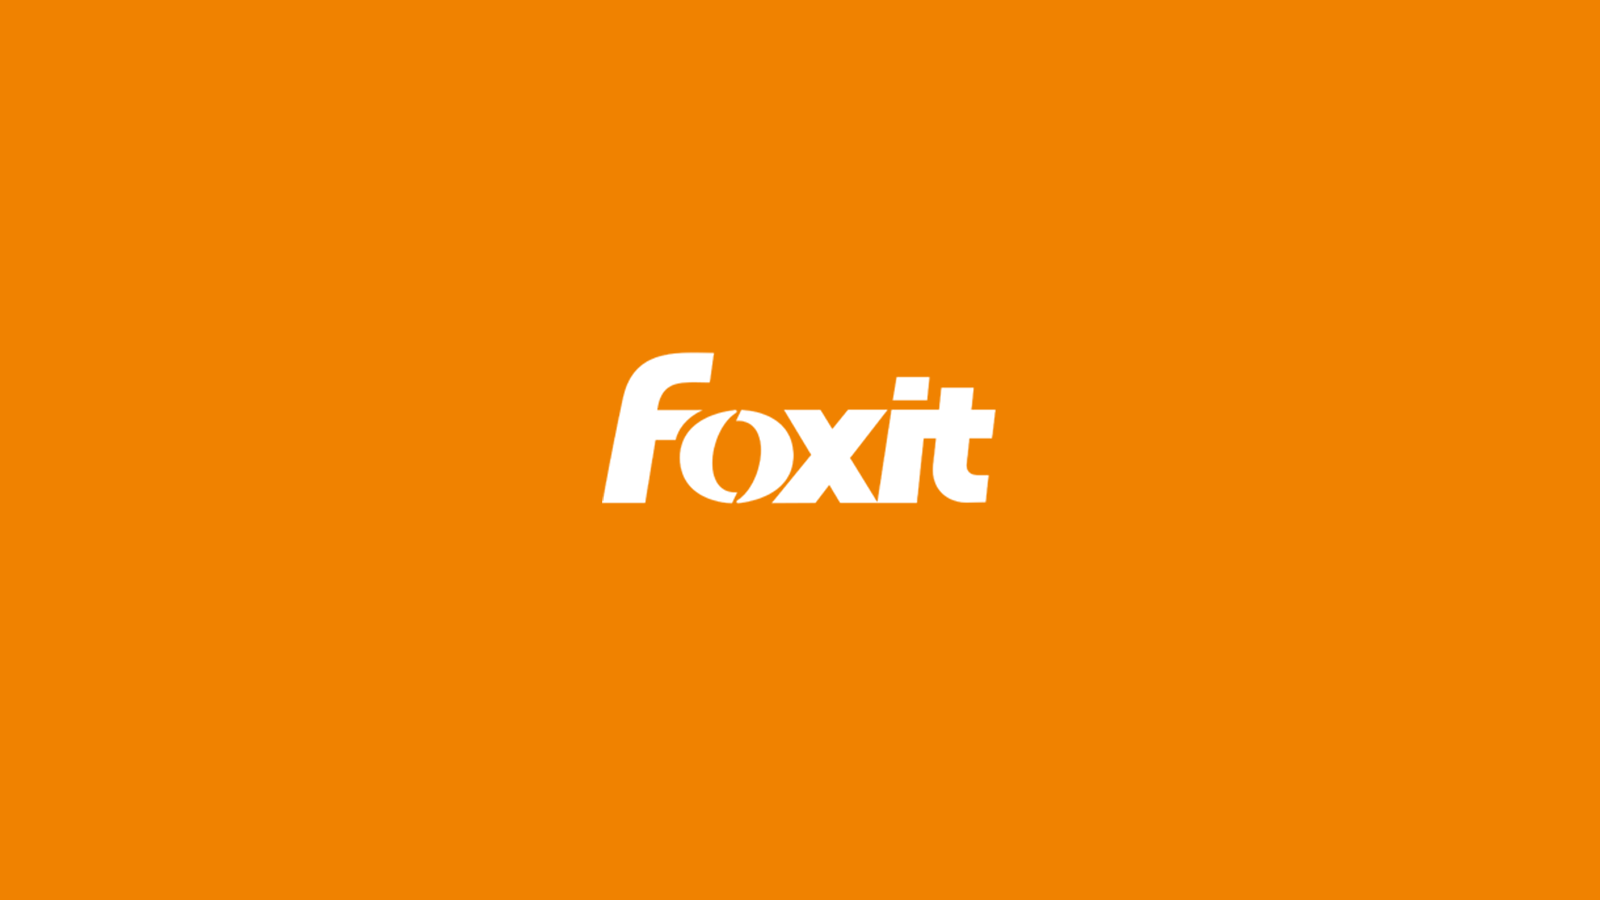 foxit phantompdf express